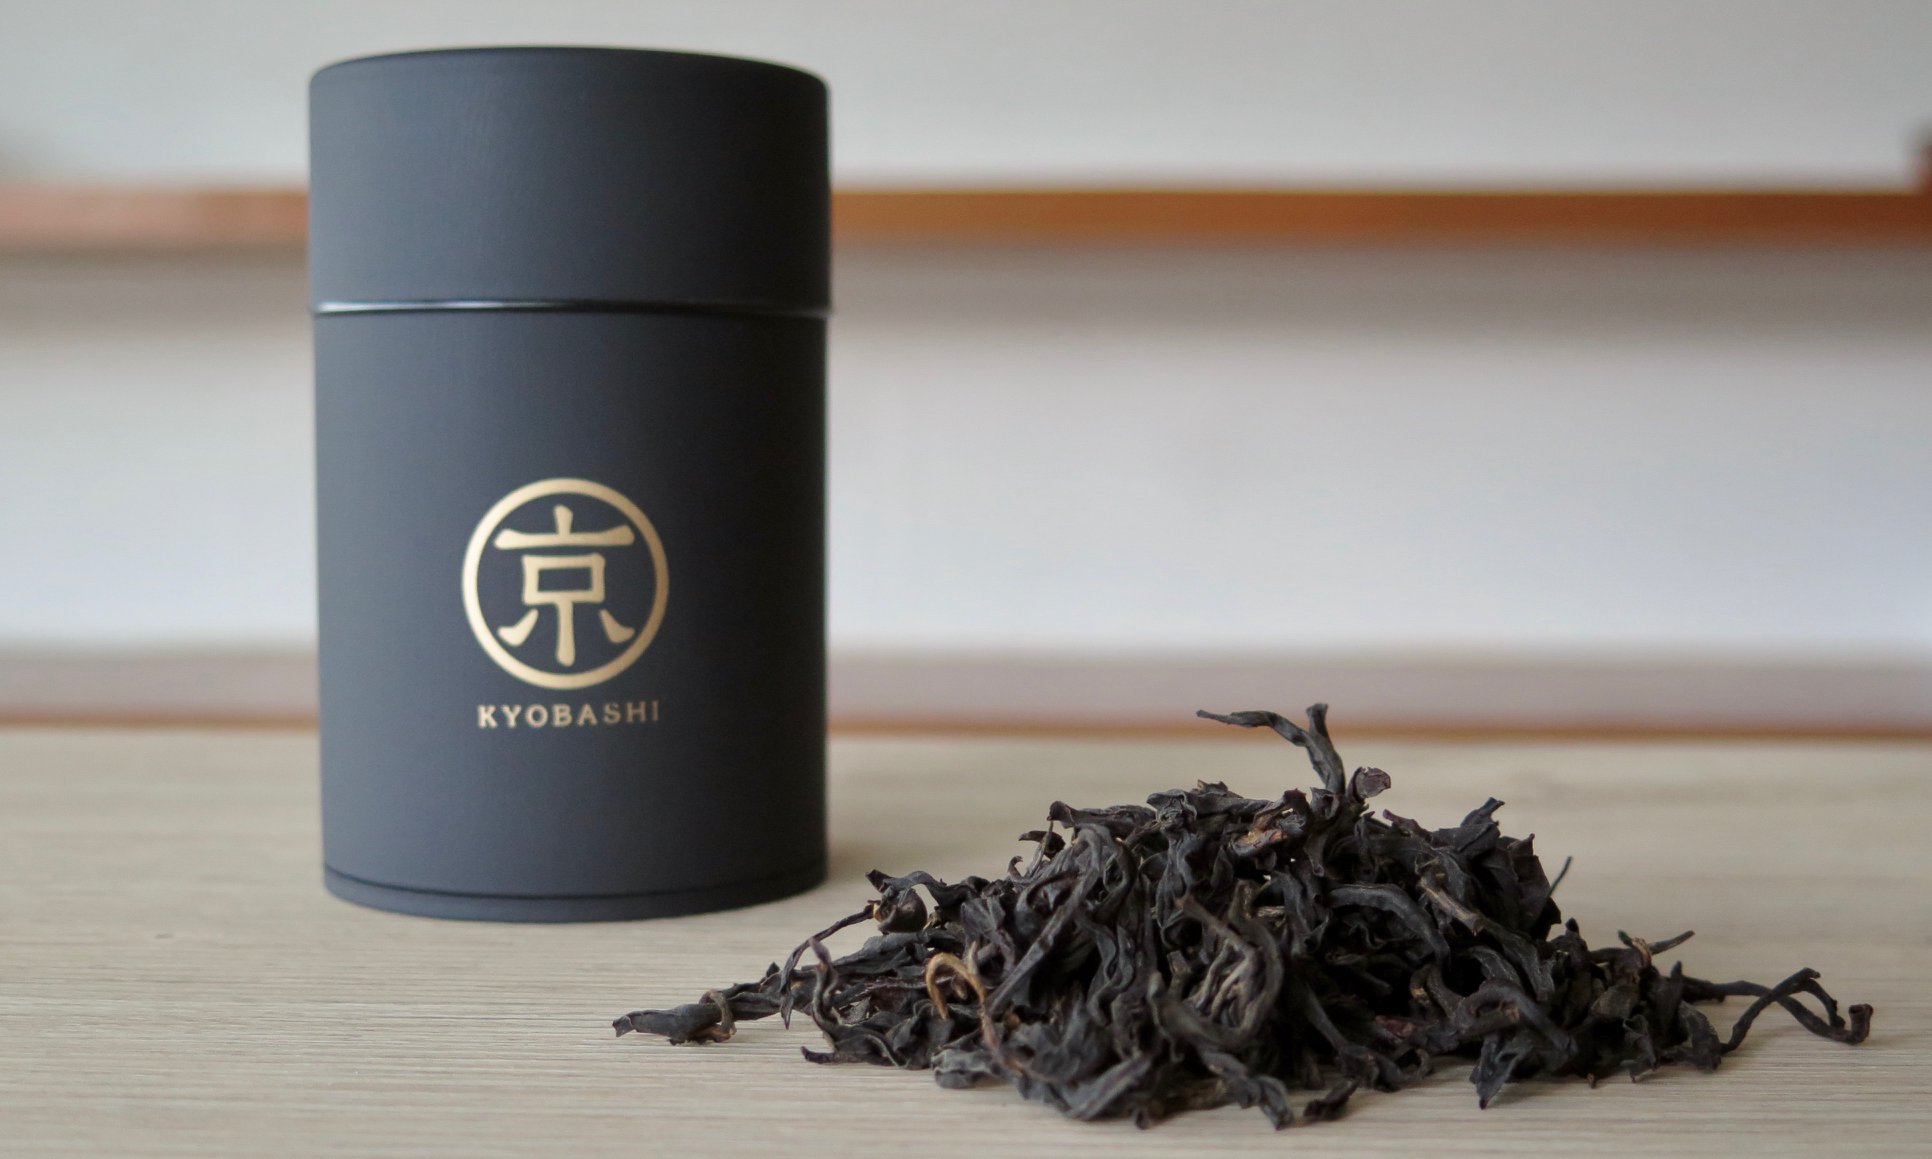 kyobashi tea - การ เก็บรักษาชา เก่า- กระปุกชา